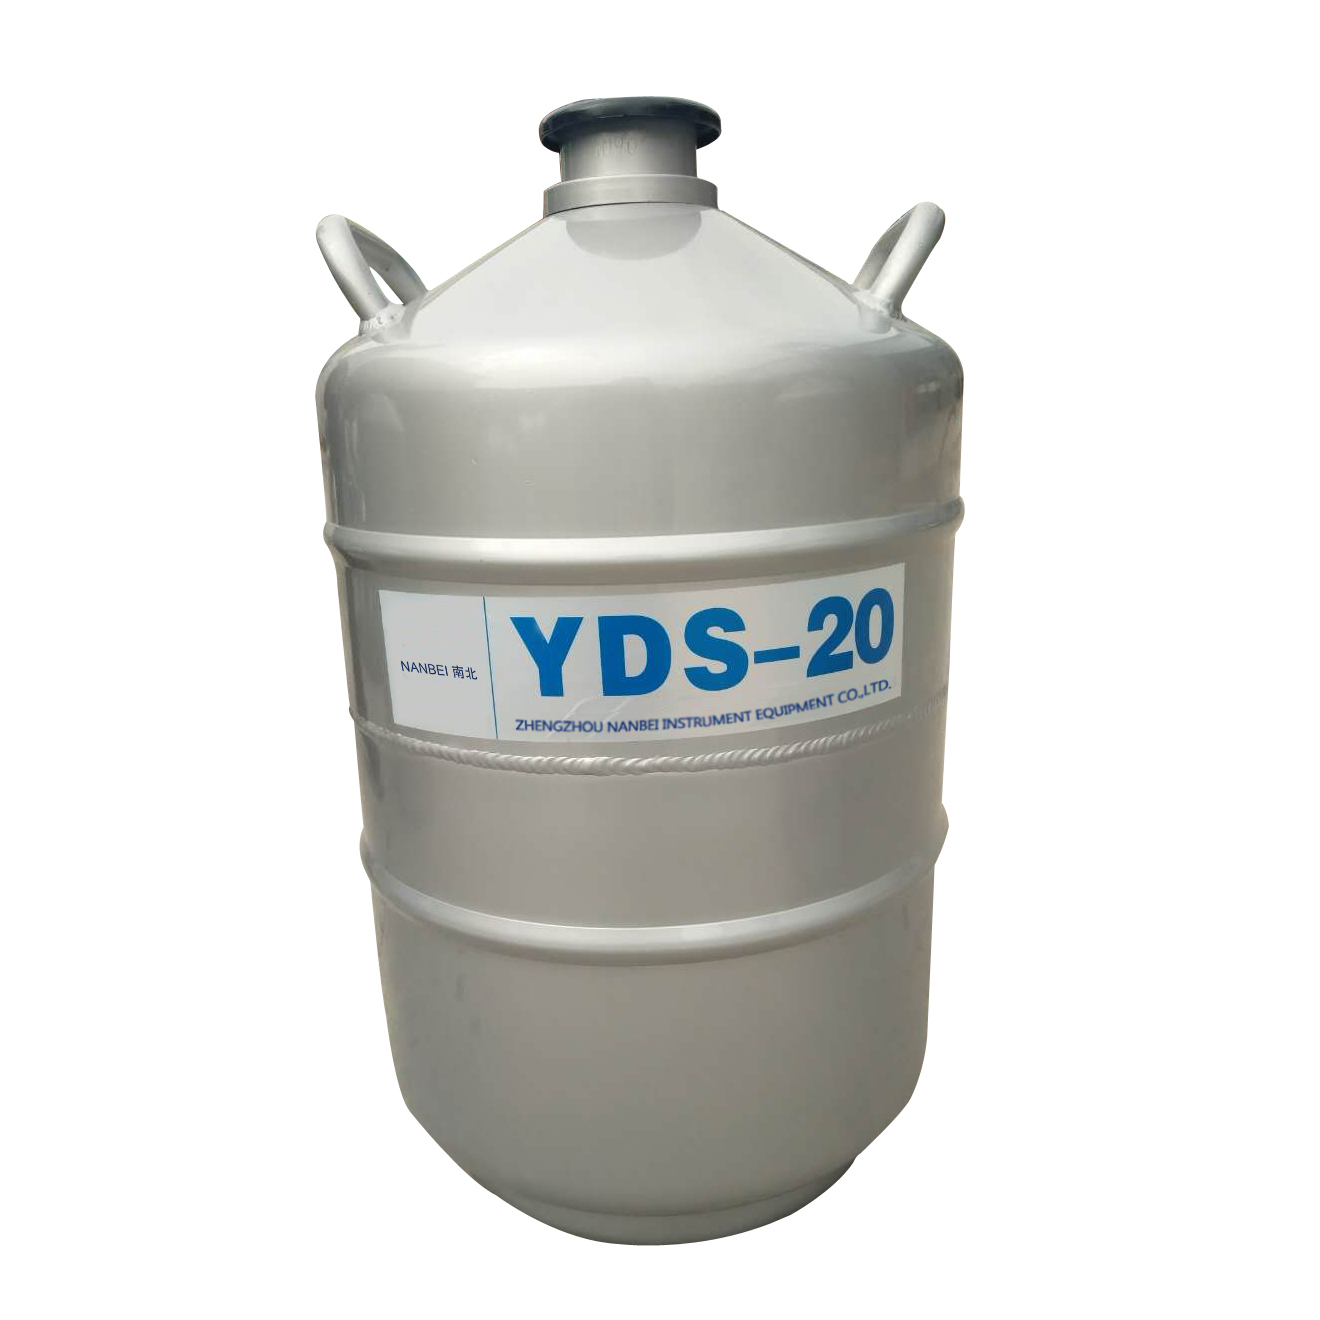 YDS-20 Storage-type Liquid Nitrogen Biological Container